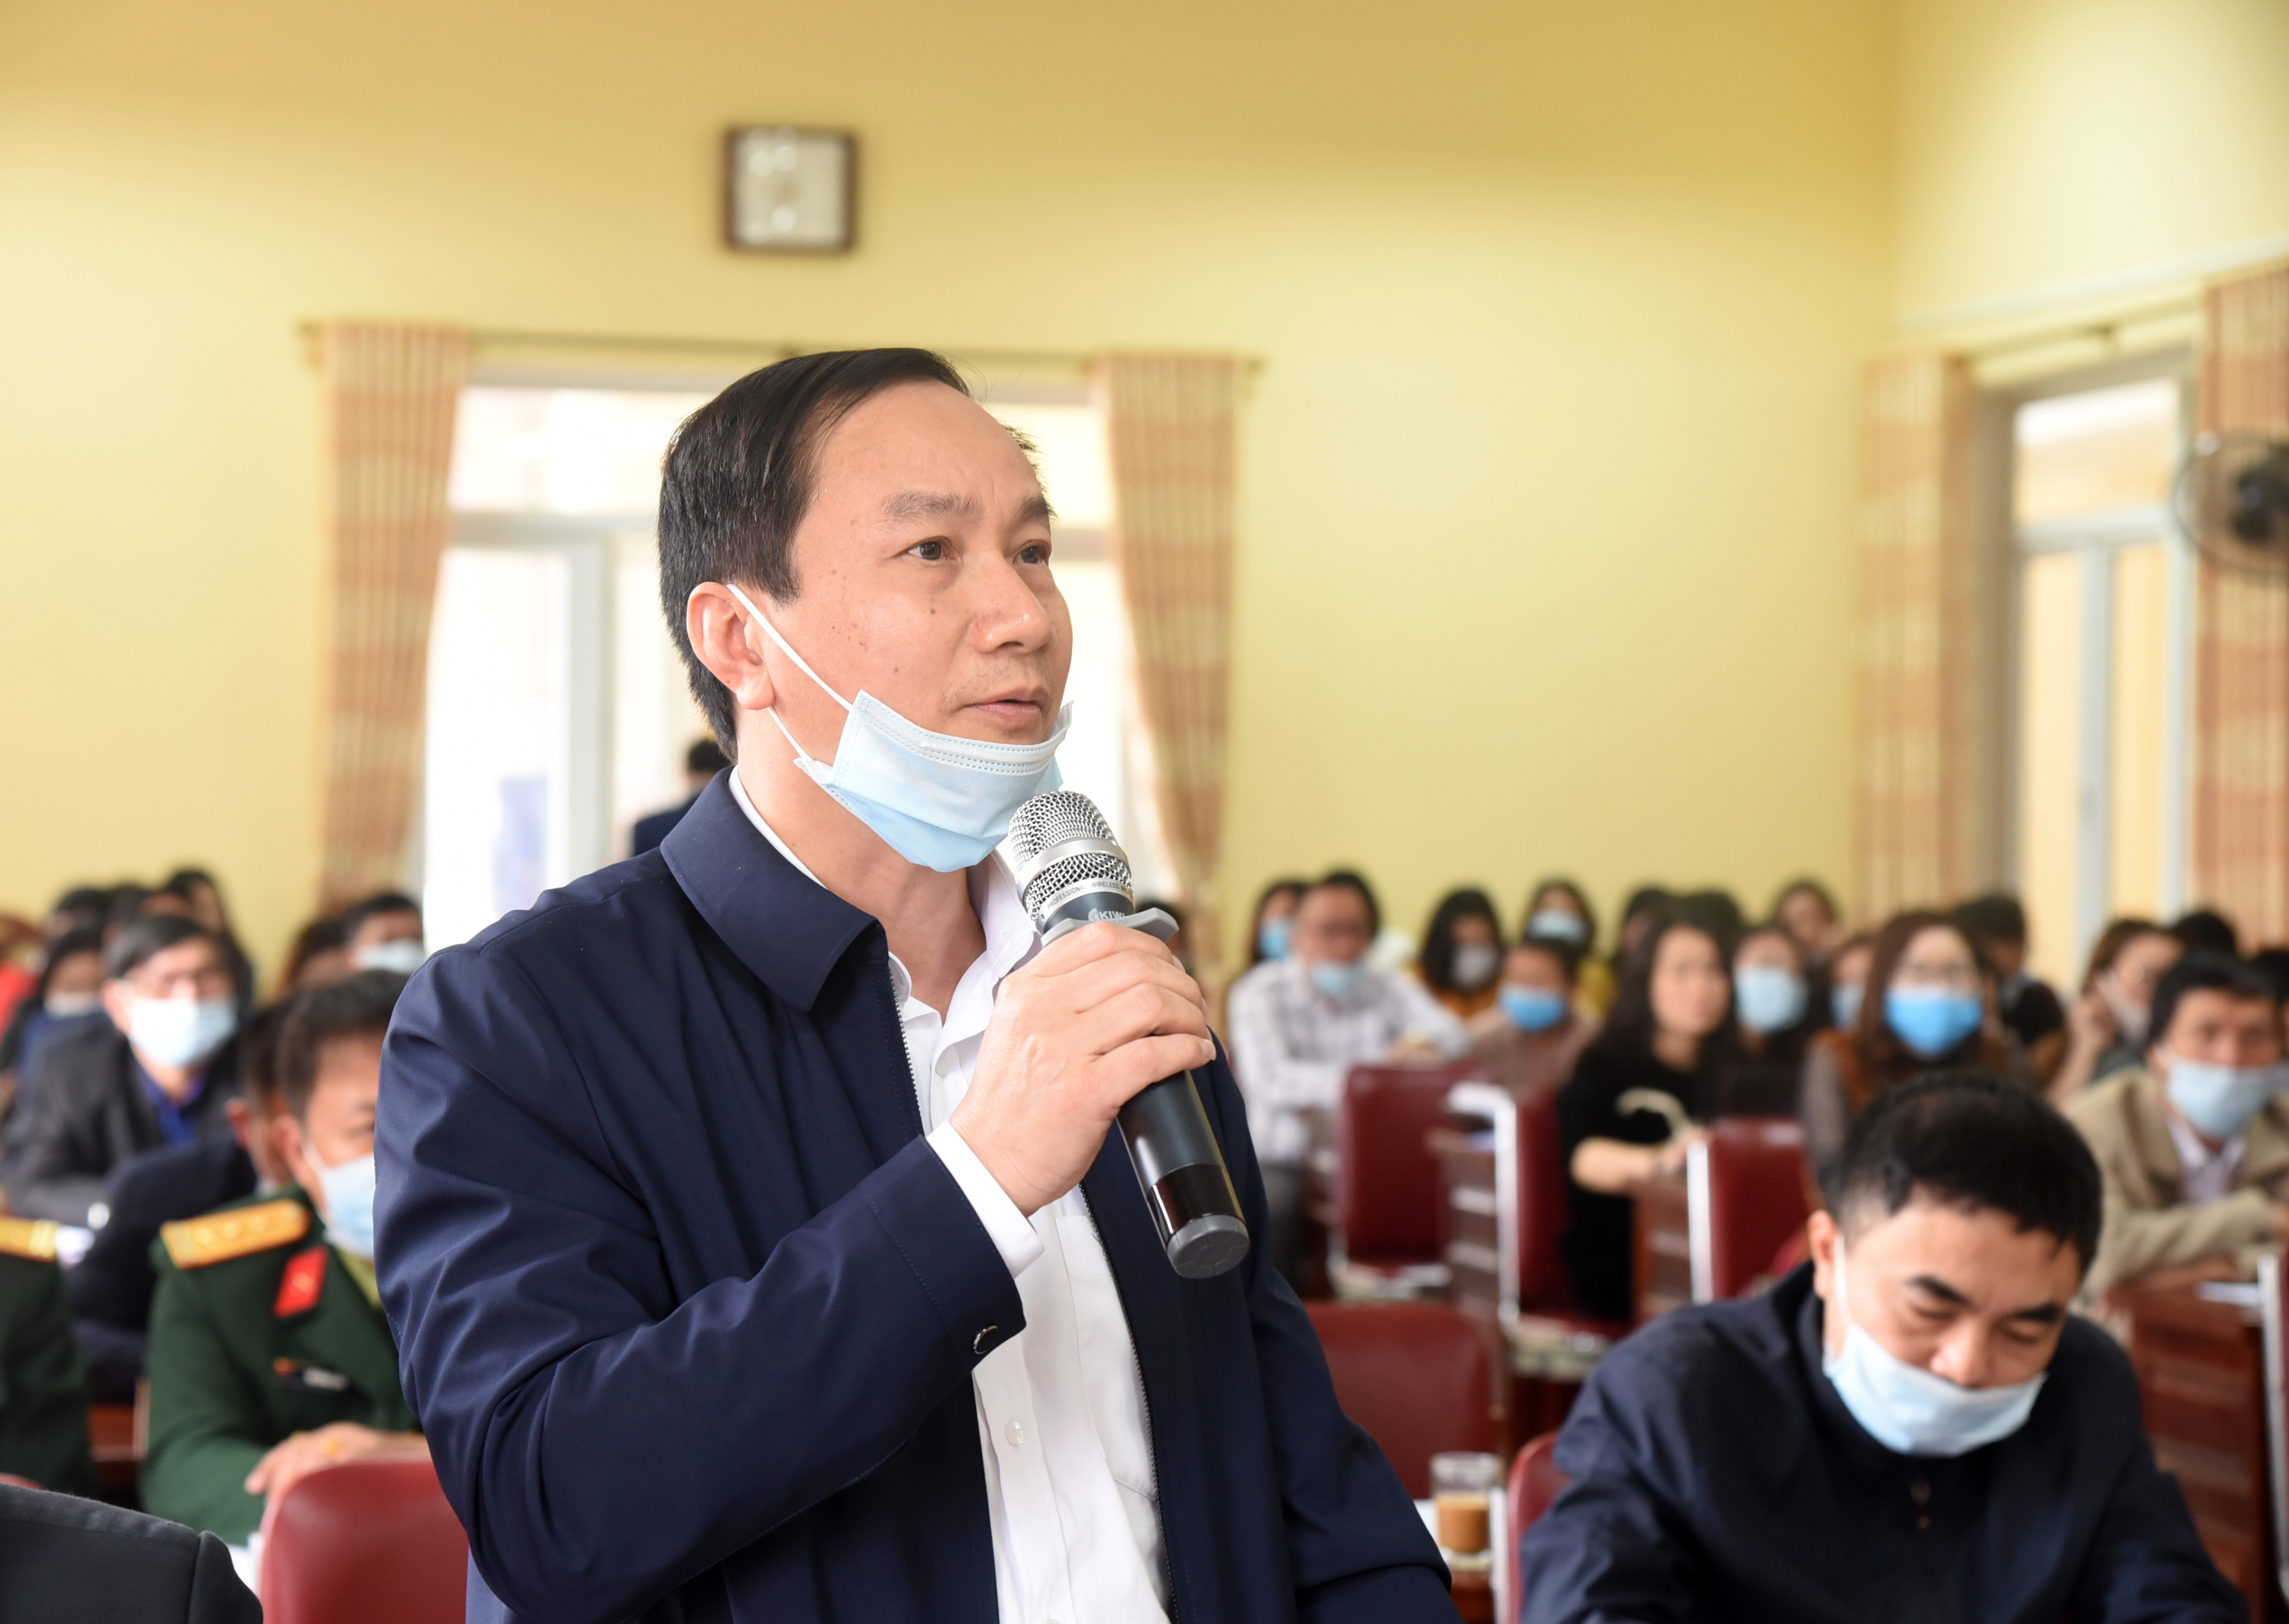 Nhà báo Trần Văn Hùng - Phó Tổng biên tập phụ trách Báo Nghệ An cho rằng thời gian tới cần tập trung tuyên truyền nội dung đưa Nghị quyết vào cuộc sống ở các địa phương, đơn vị. Ảnh: Thu Giang